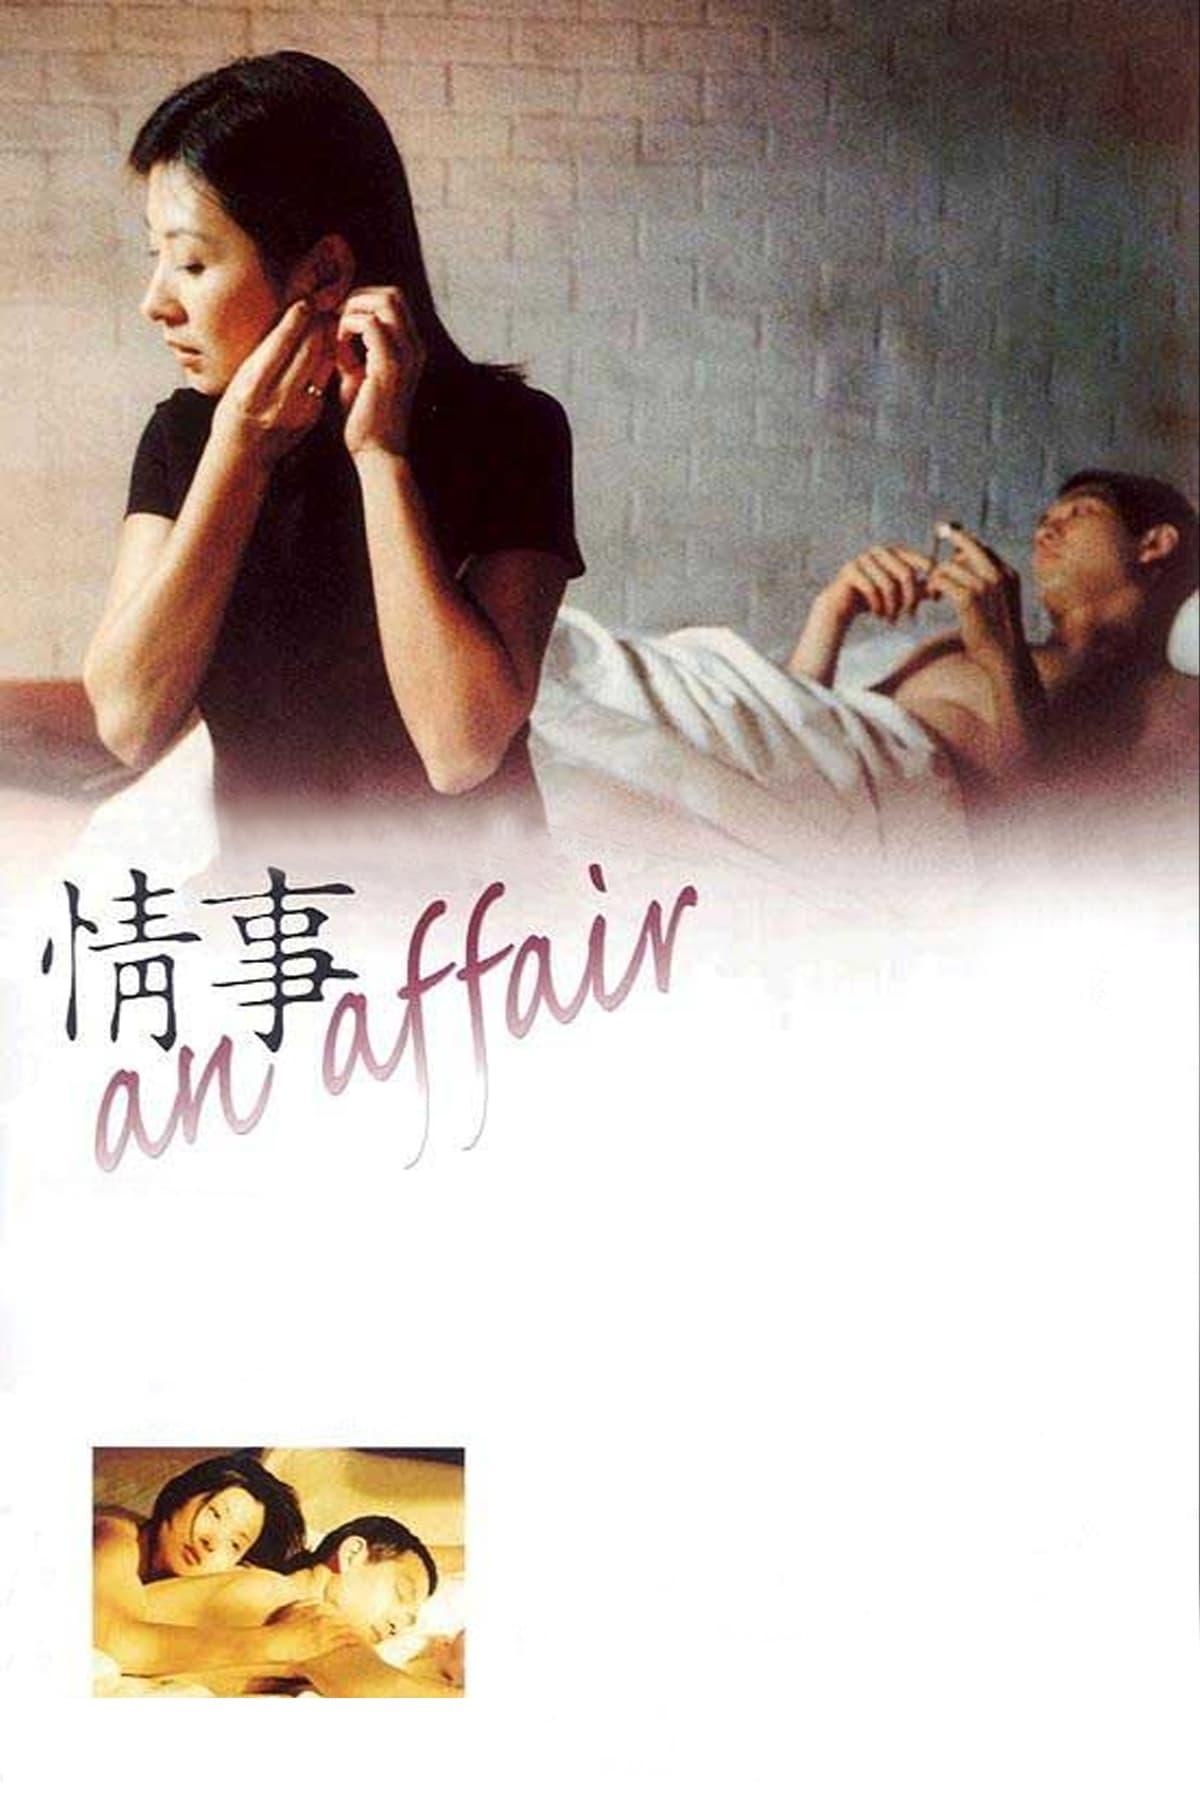 An Affair poster